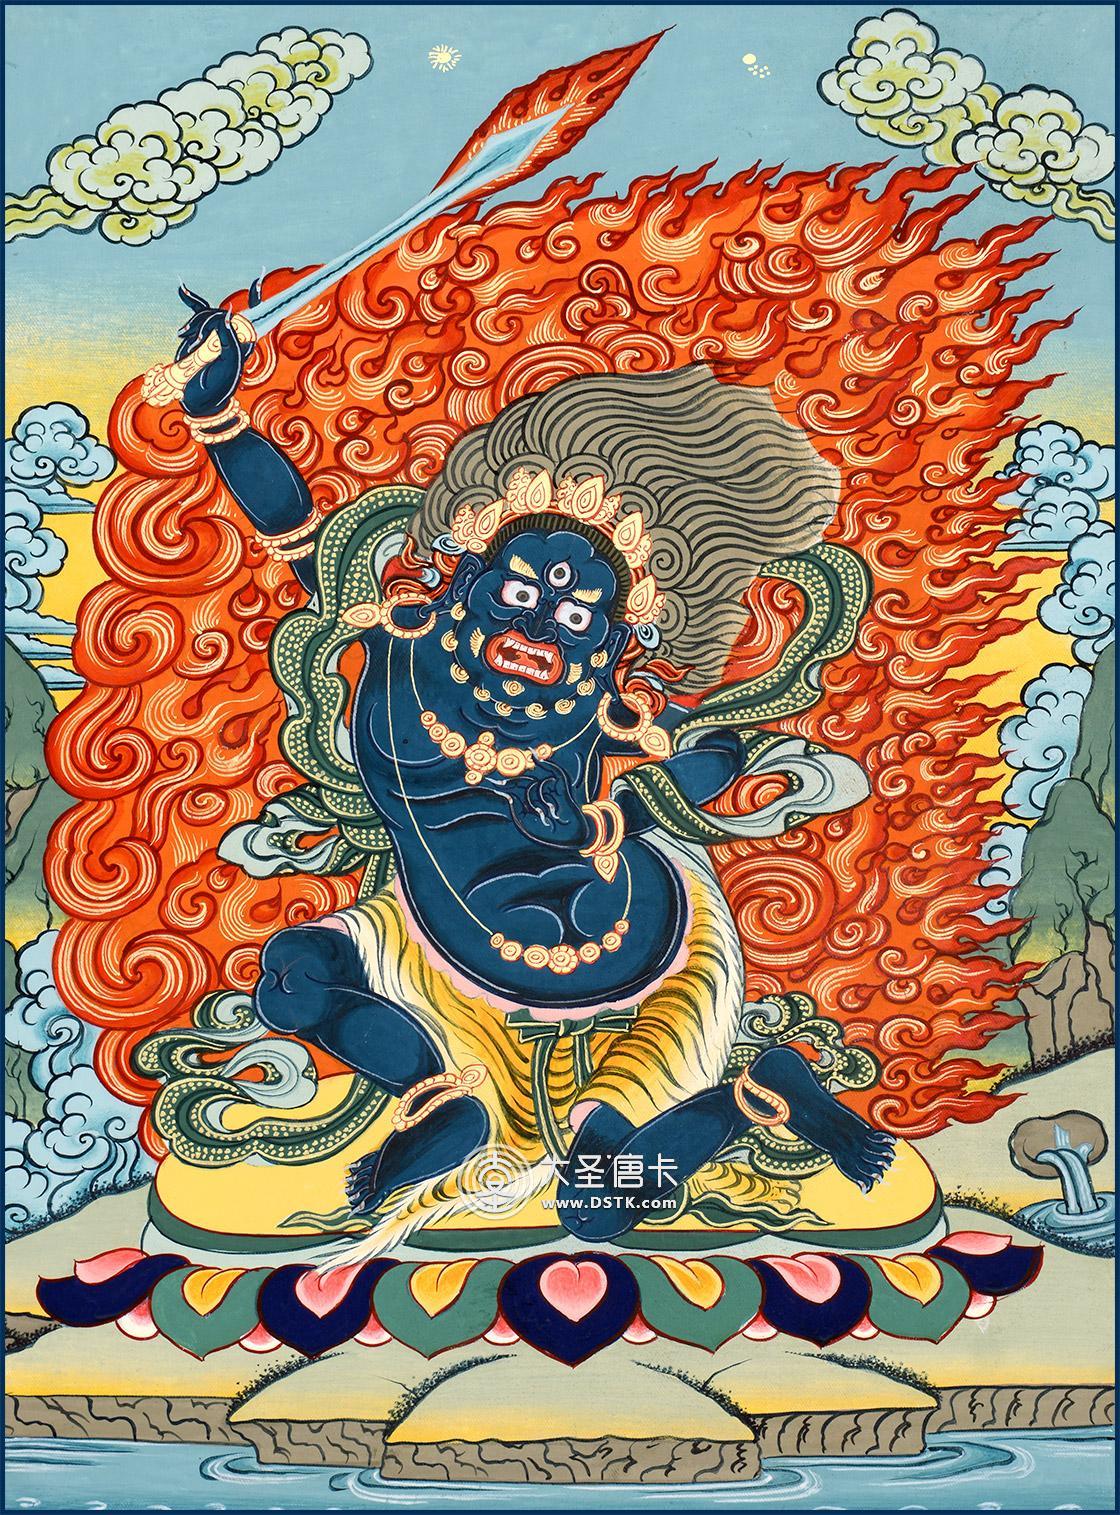 菩萨,其名号梵音为acalanatha,意为不动尊或无动尊,教界称为不动明王